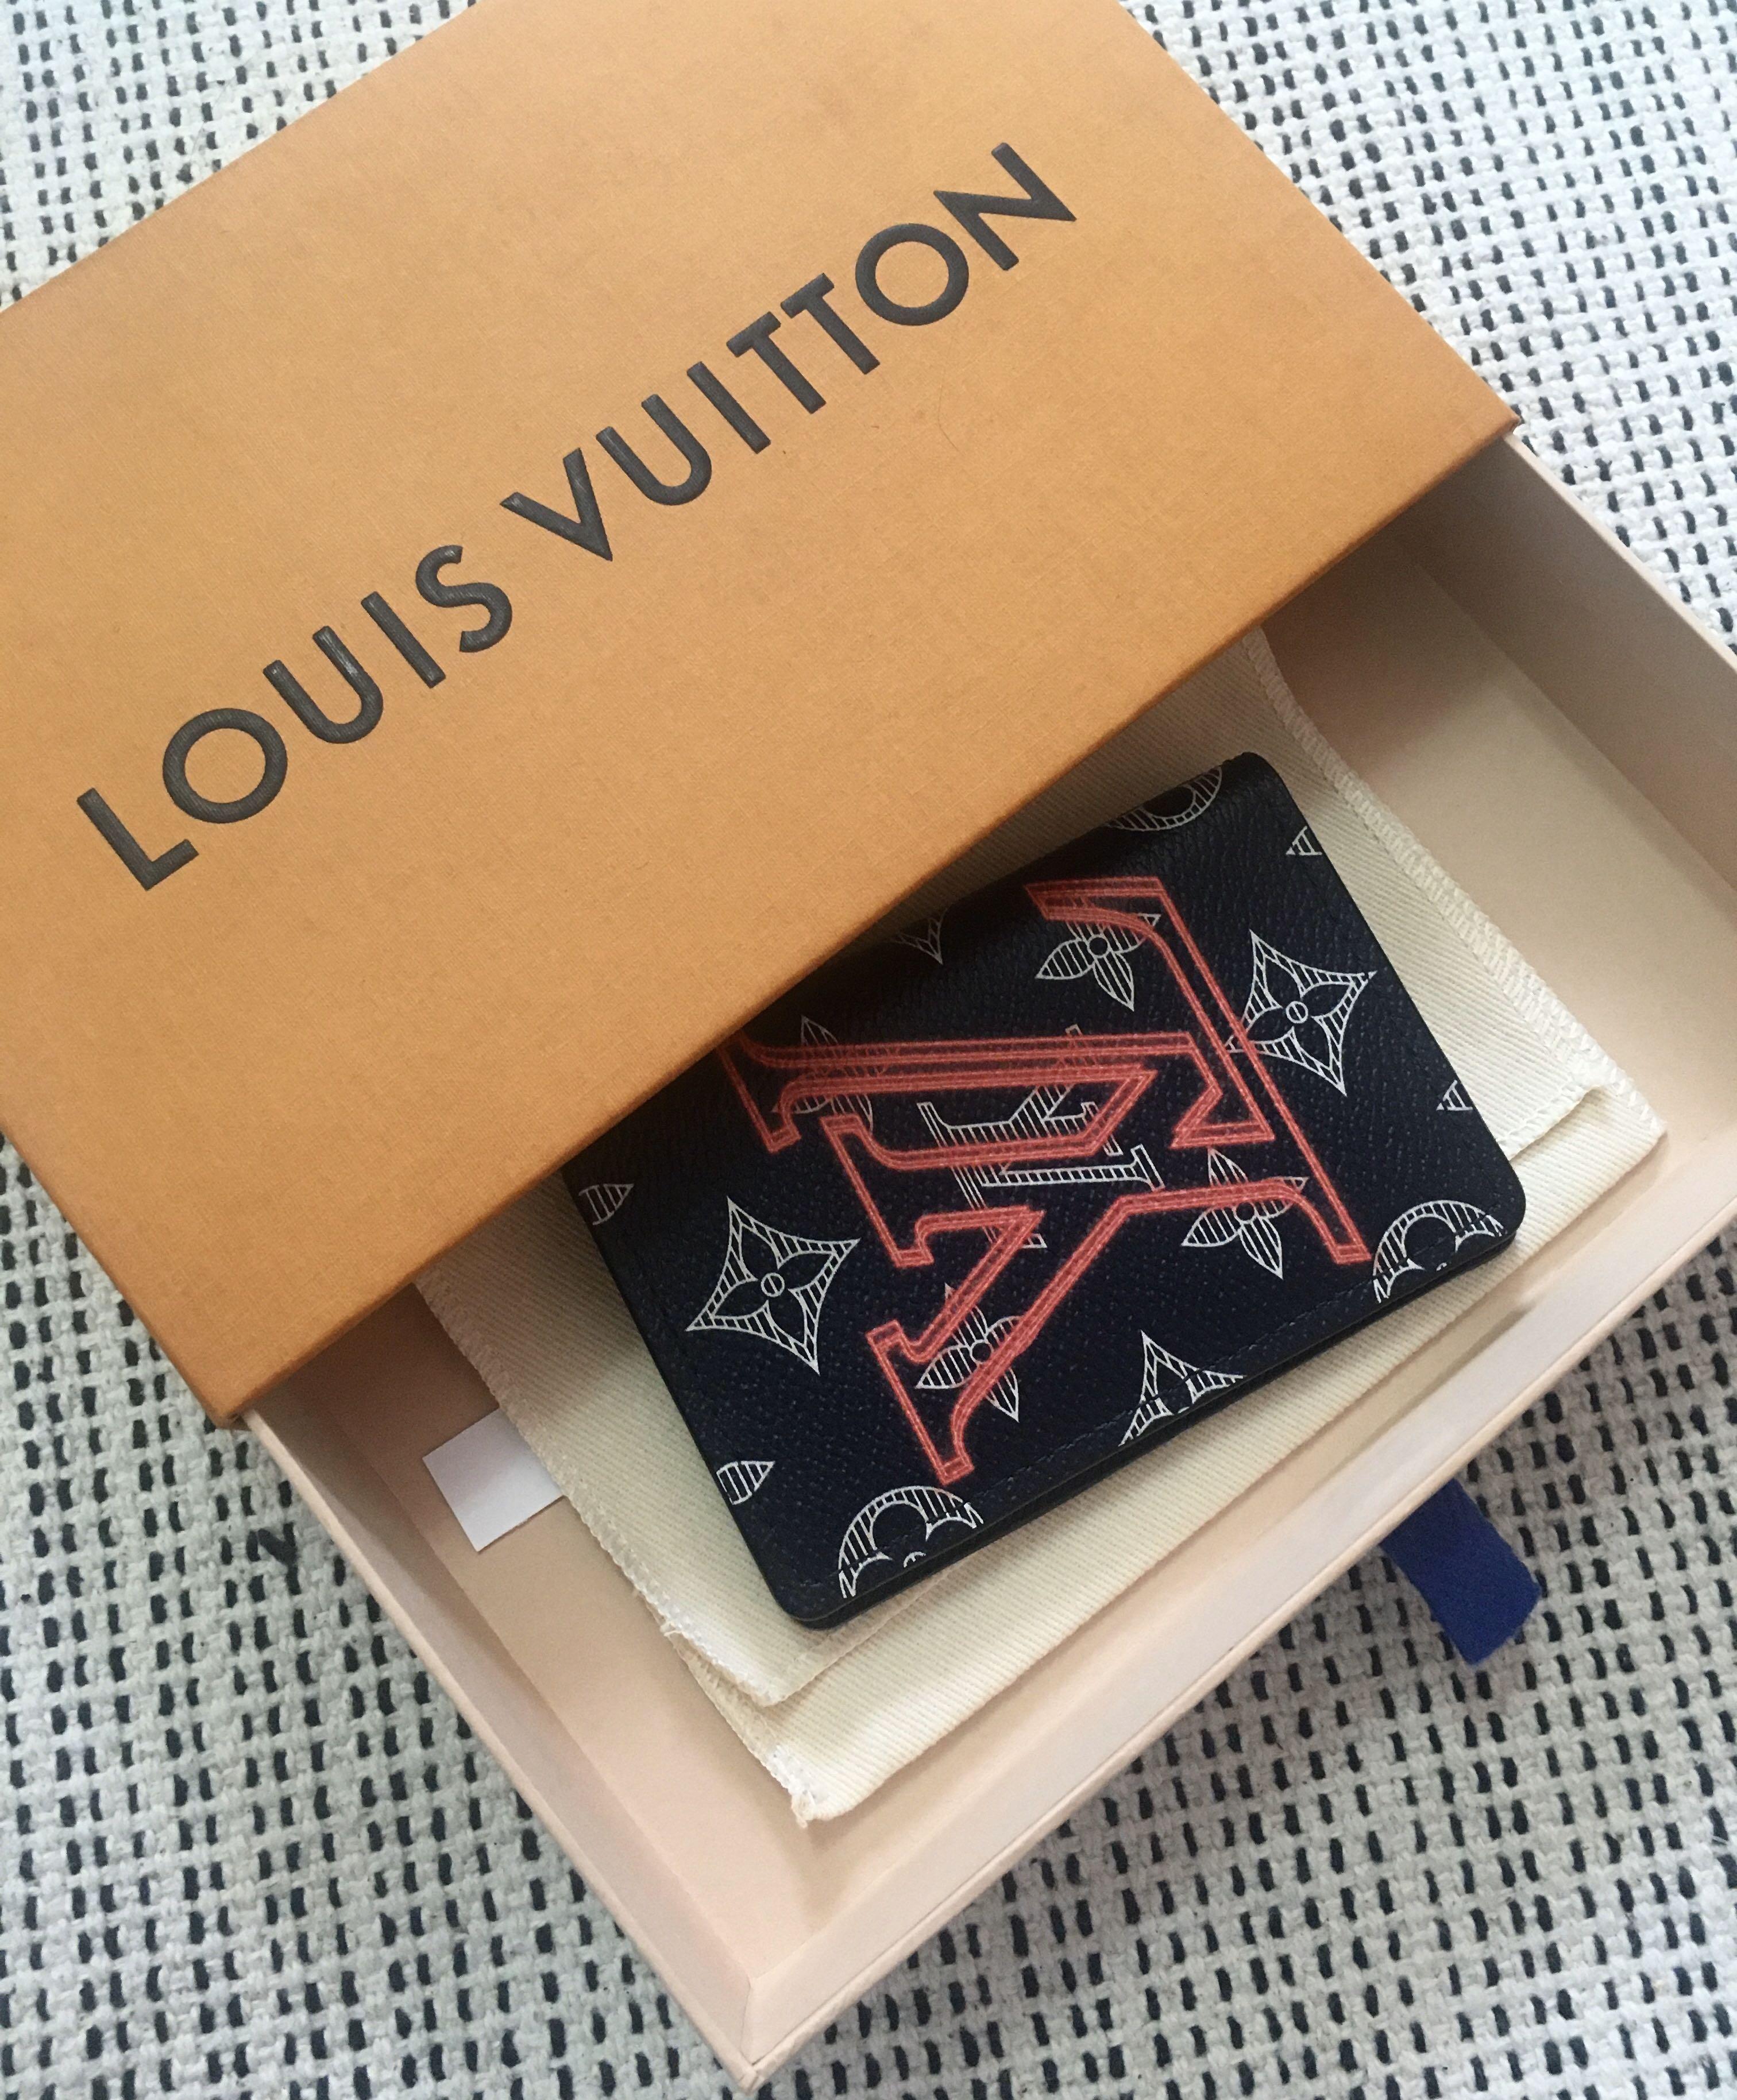 Kim Jones se despide muy british de Louis Vuitton en París